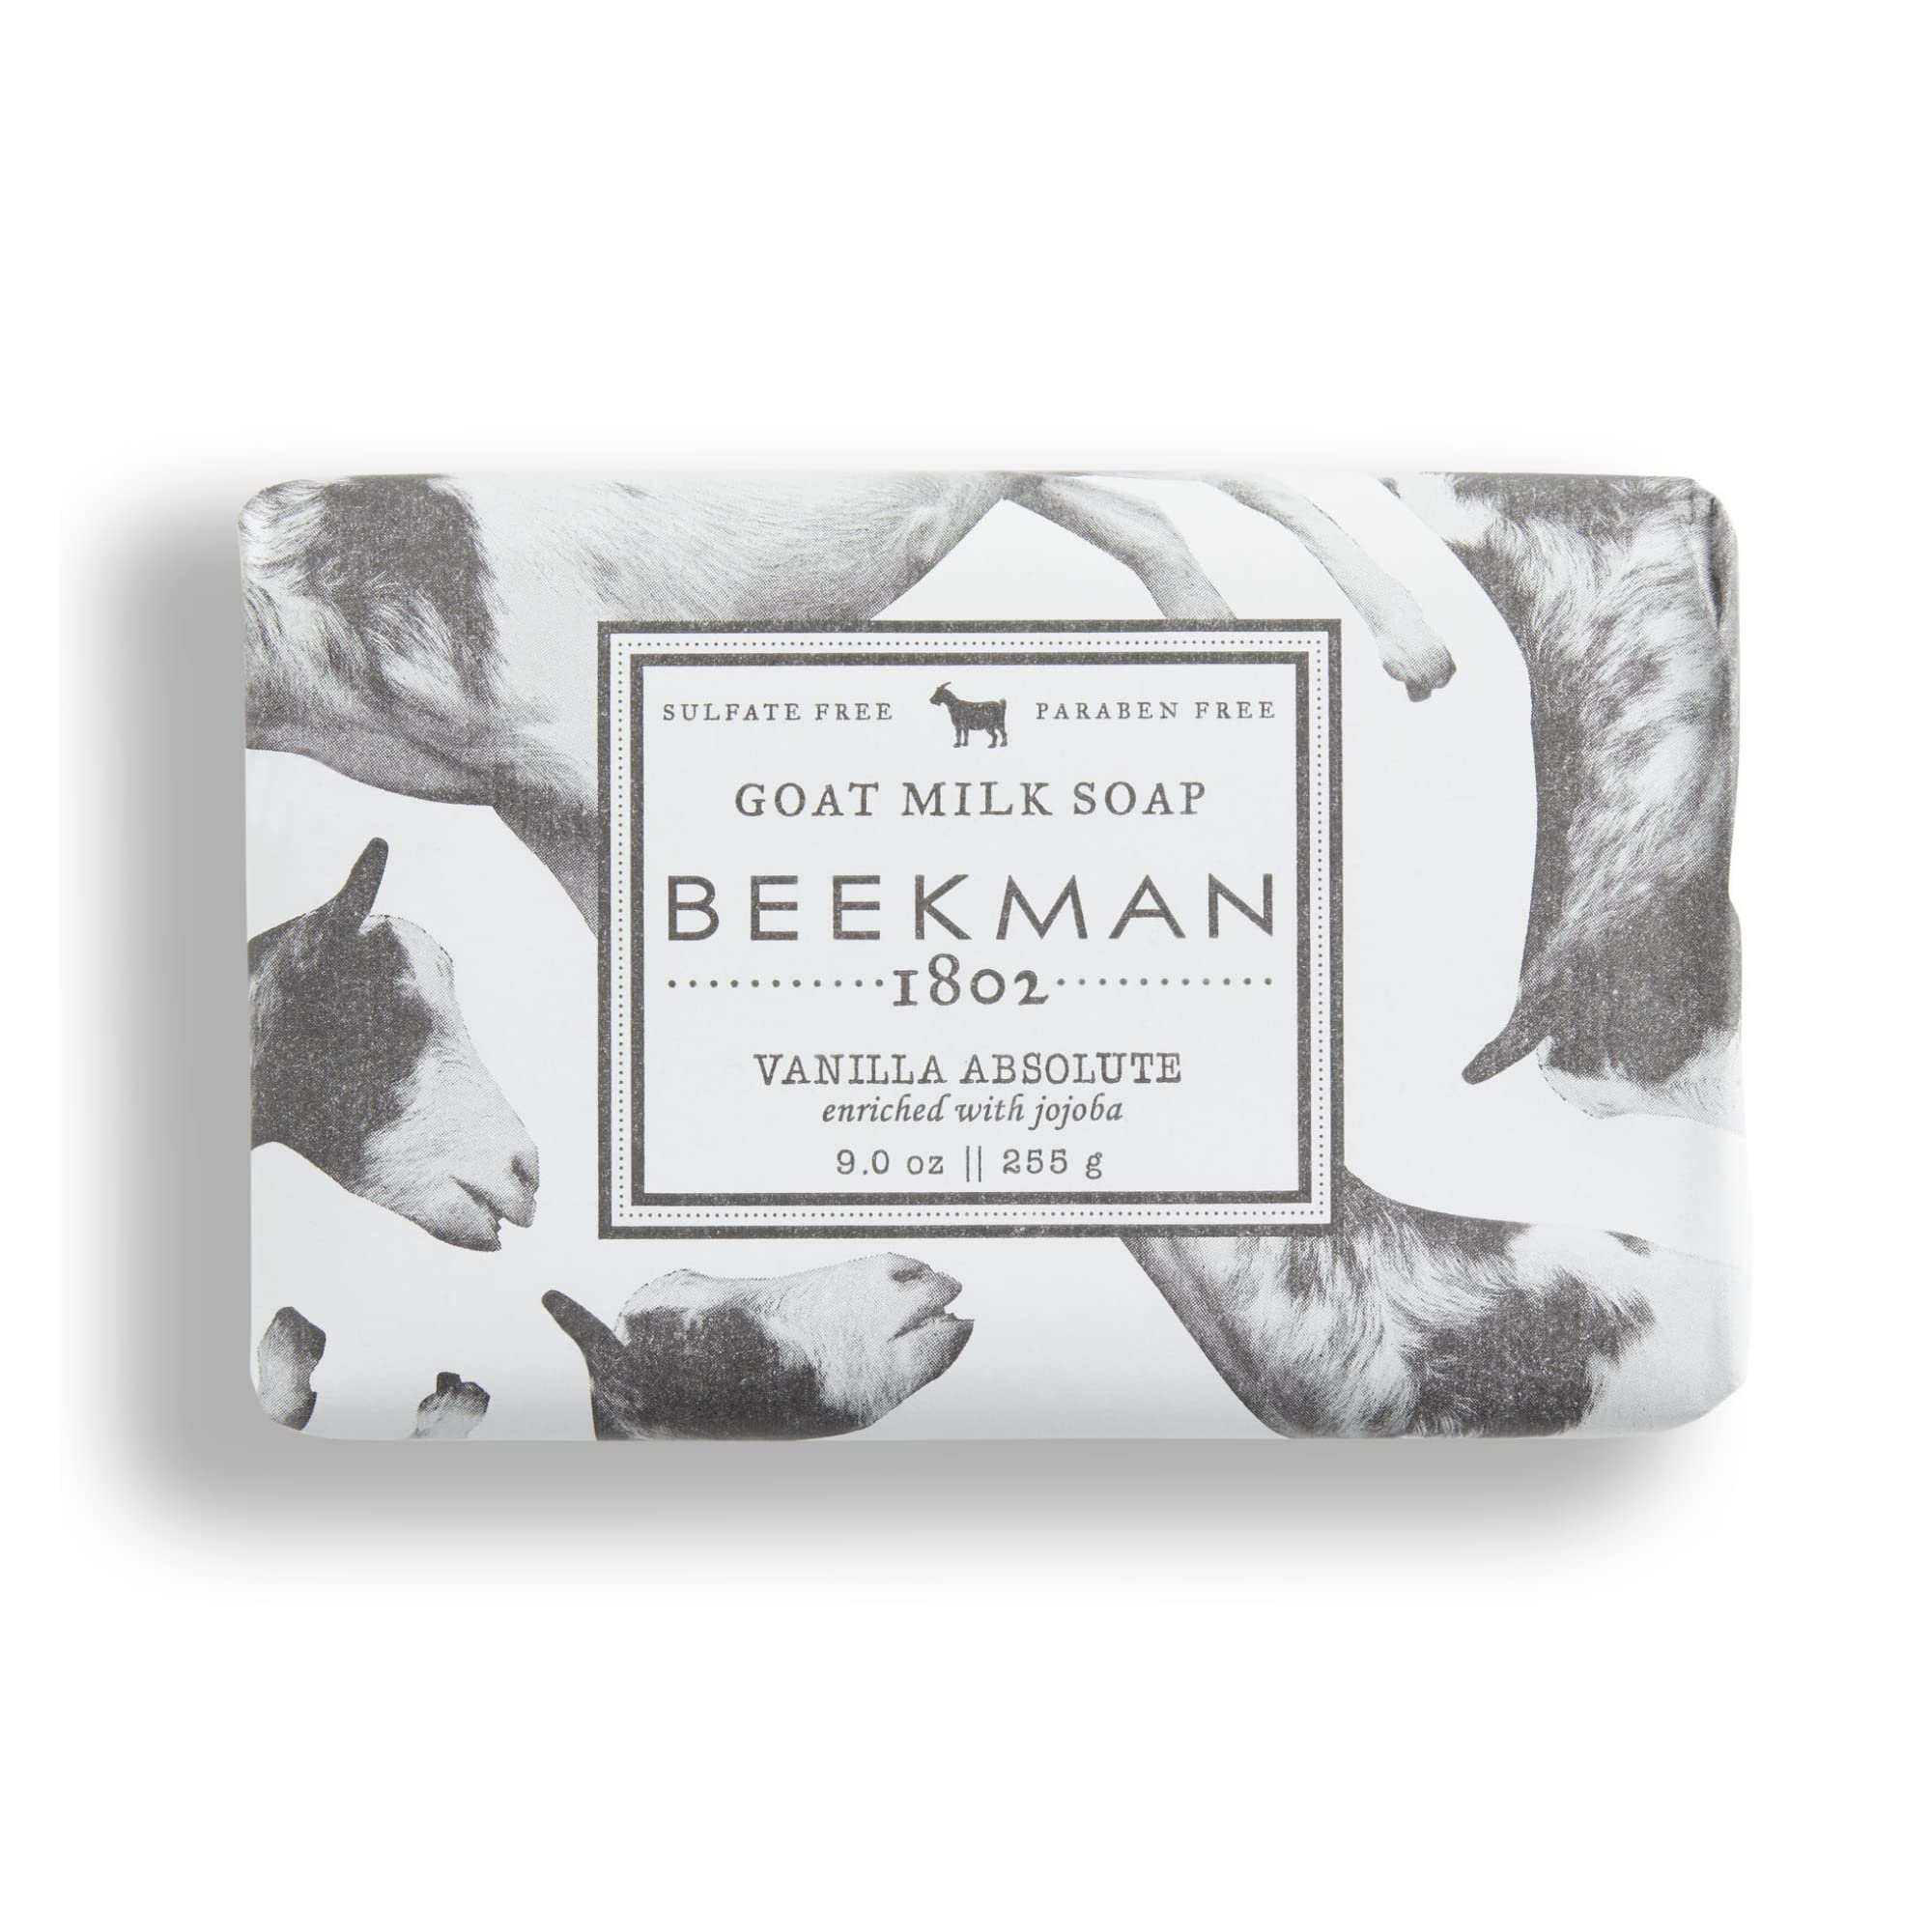 Pure Goat Milk Body Bar Soap - Beekman 1802 - Beck Home + Goods